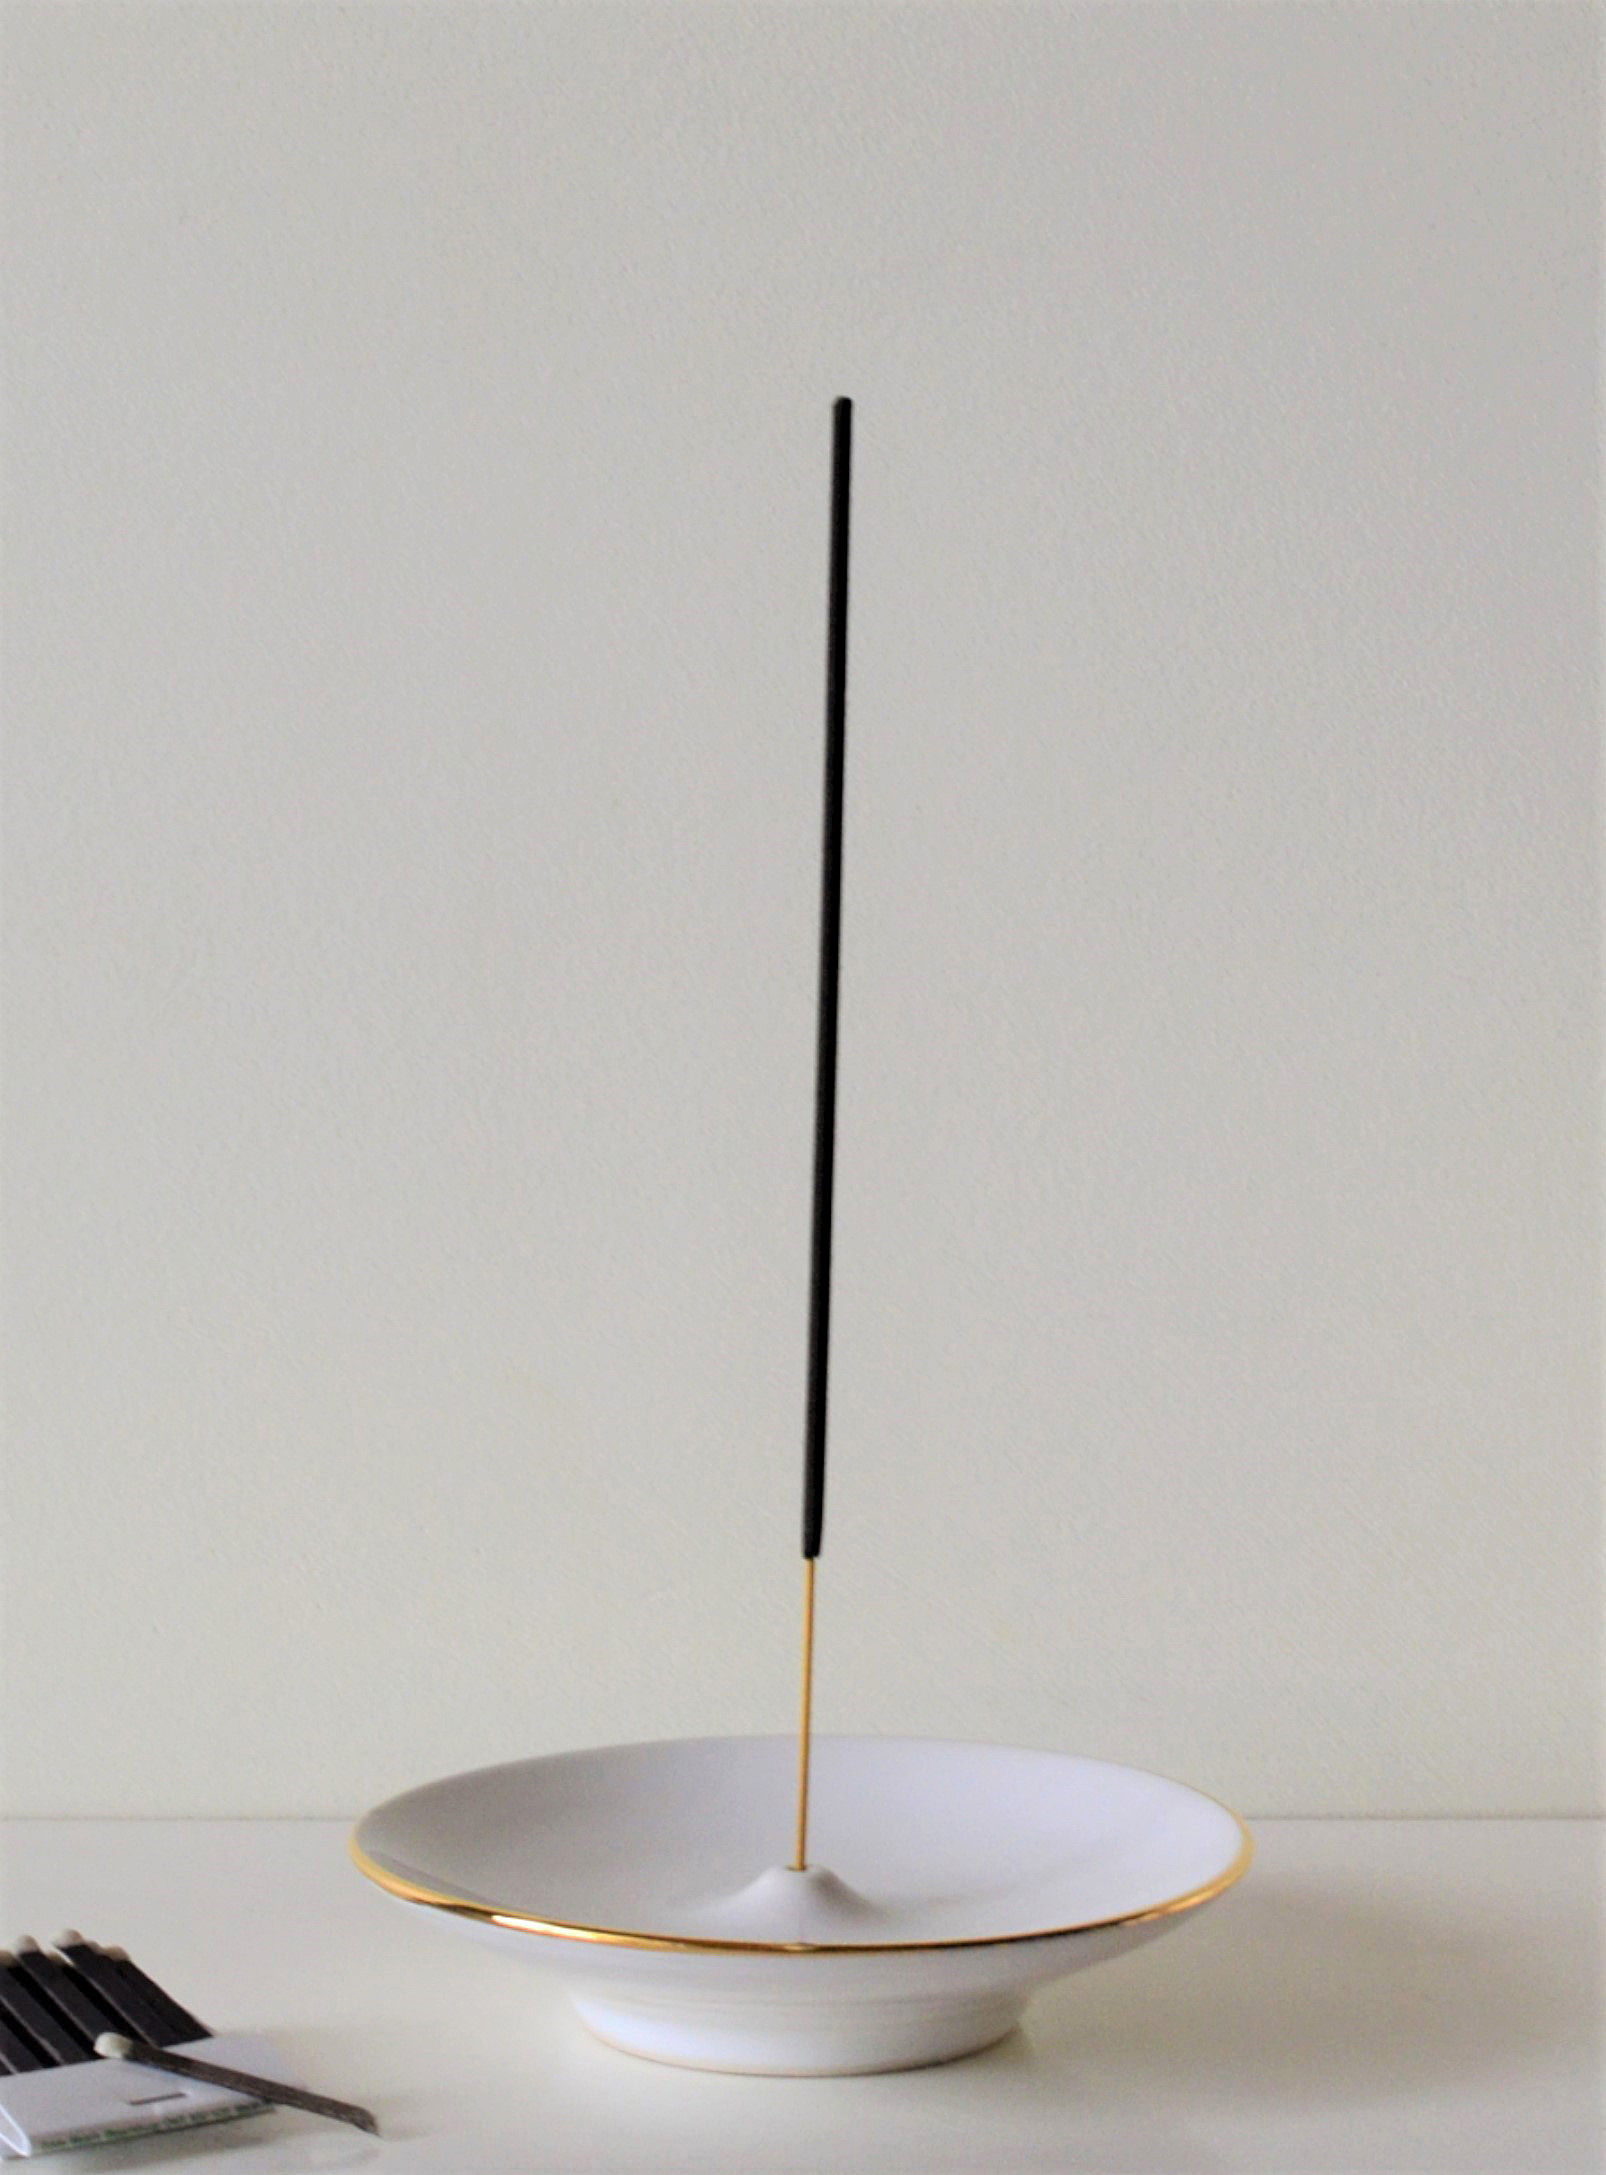 Akai Ceramic Studio - Le porte-encens en porcelaine blanche bordure dorée